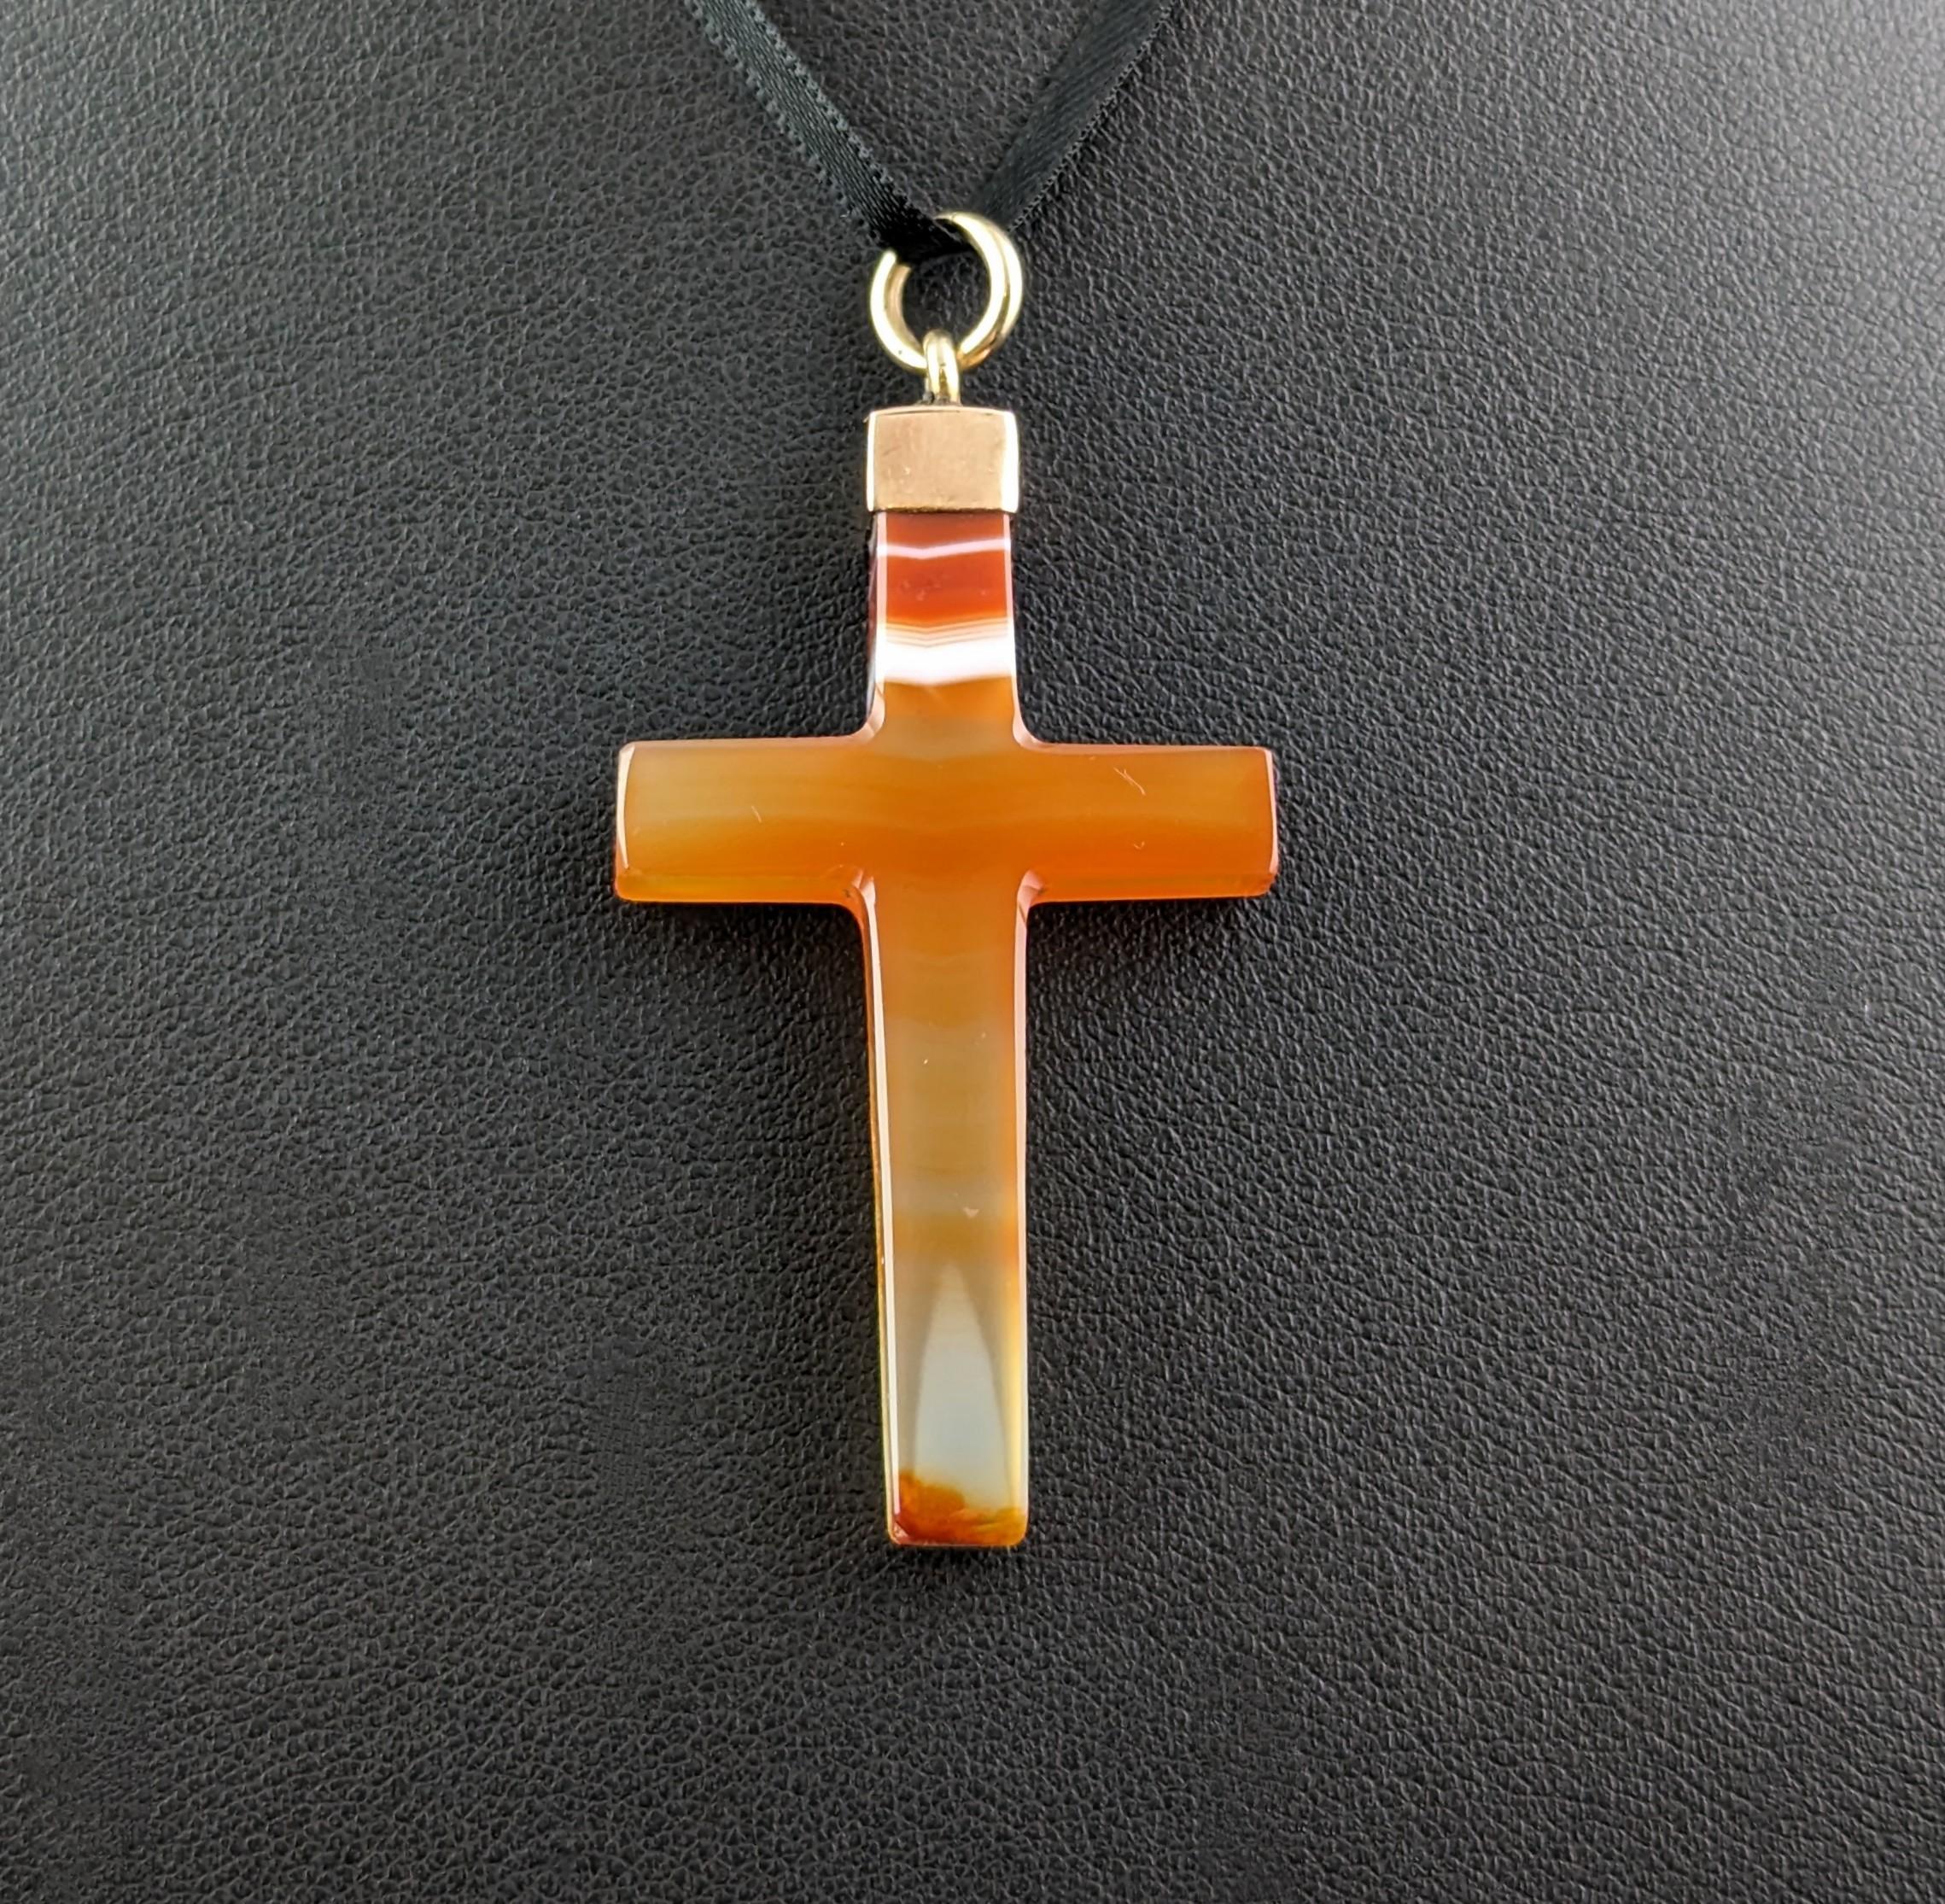 Magnifique pendentif en forme de croix en agate.

Il s'agit d'une belle agate de couleur orange avec des bandes claires et blanches qui la traversent.

La croix a un capuchon en or 9ct et une balle au sommet de la croix prête à être suspendue à